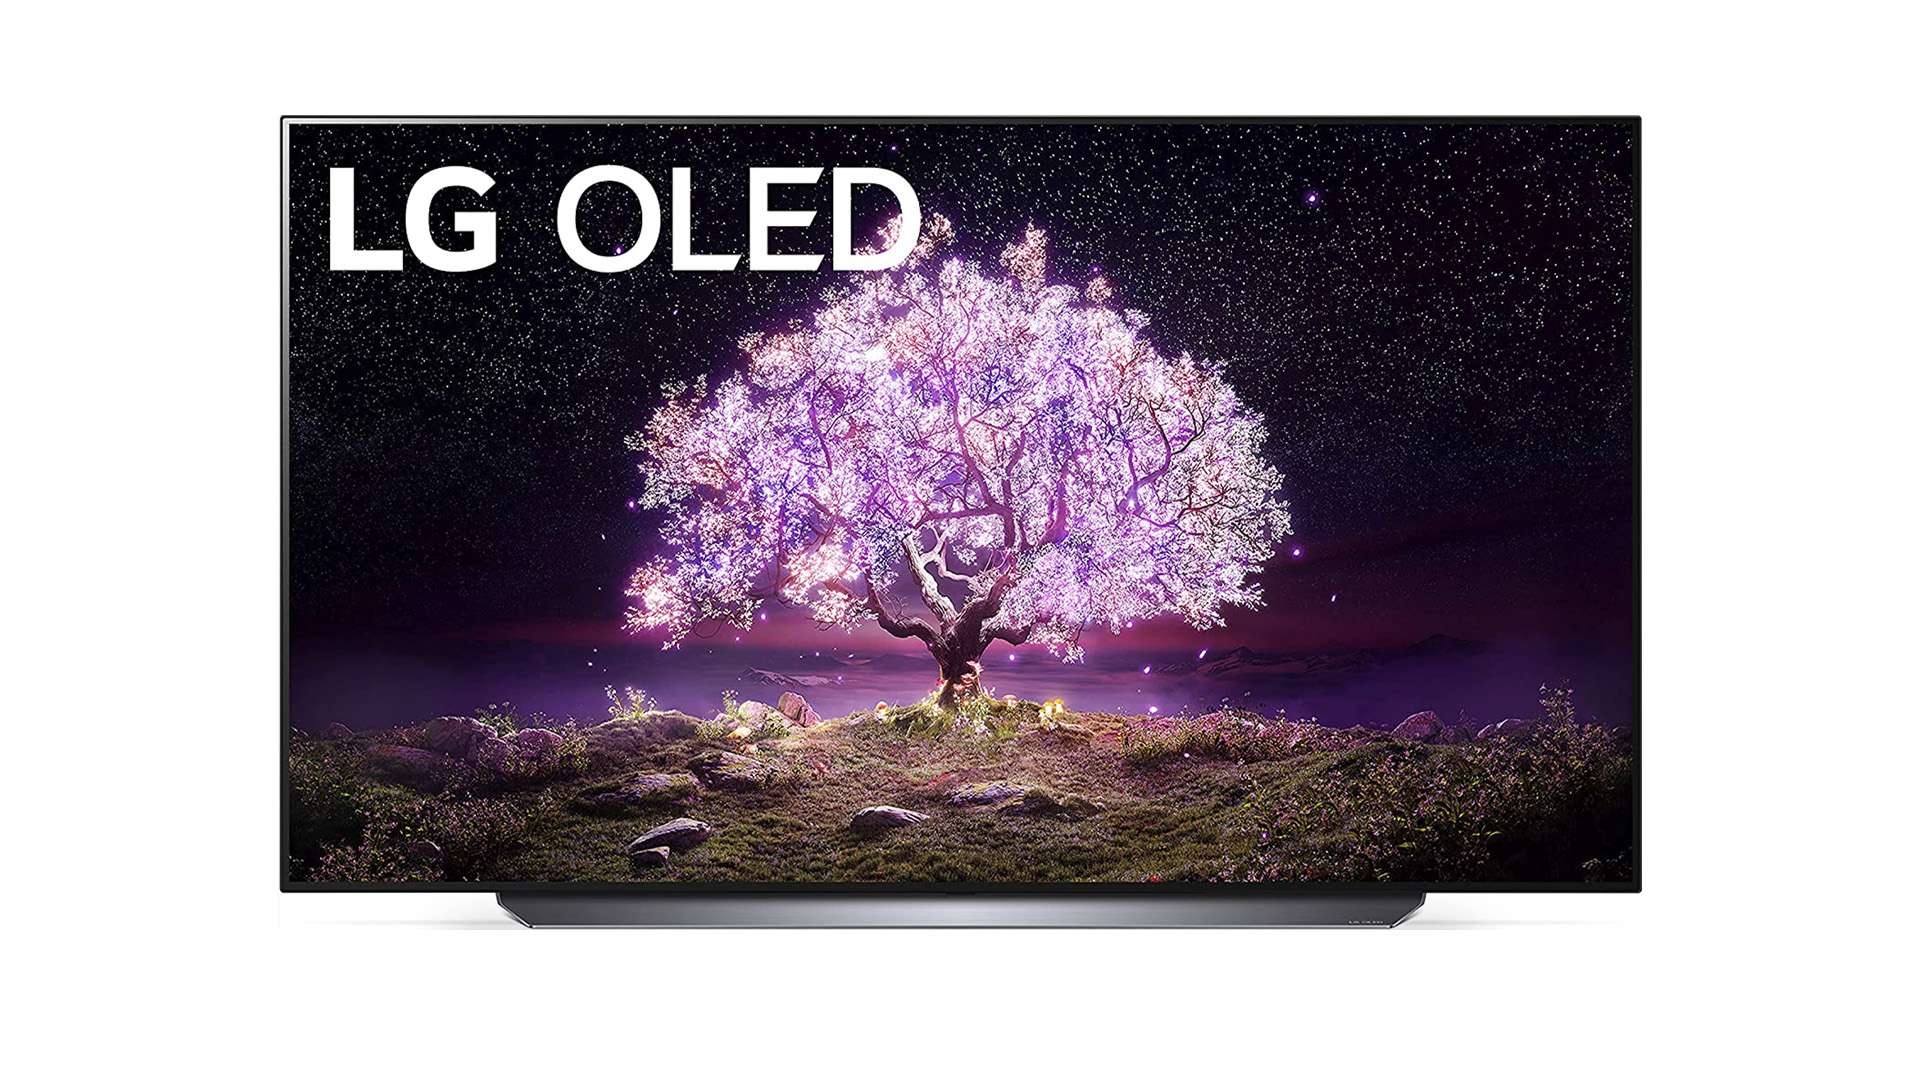 LG OLED C1 Series 4K Smart TV